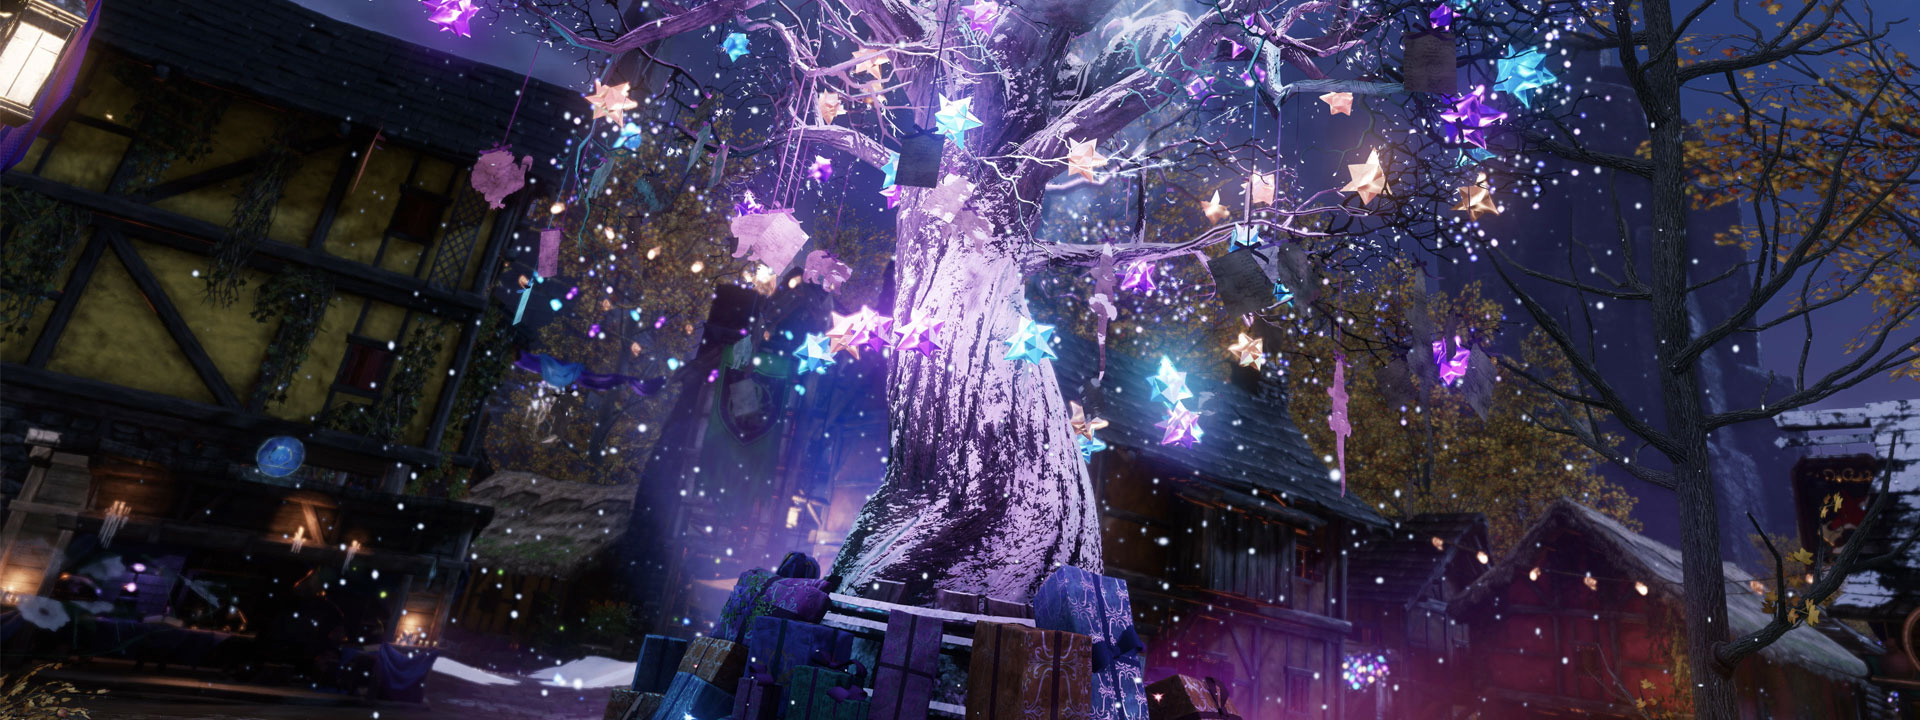 Un arbre aux décorations festives